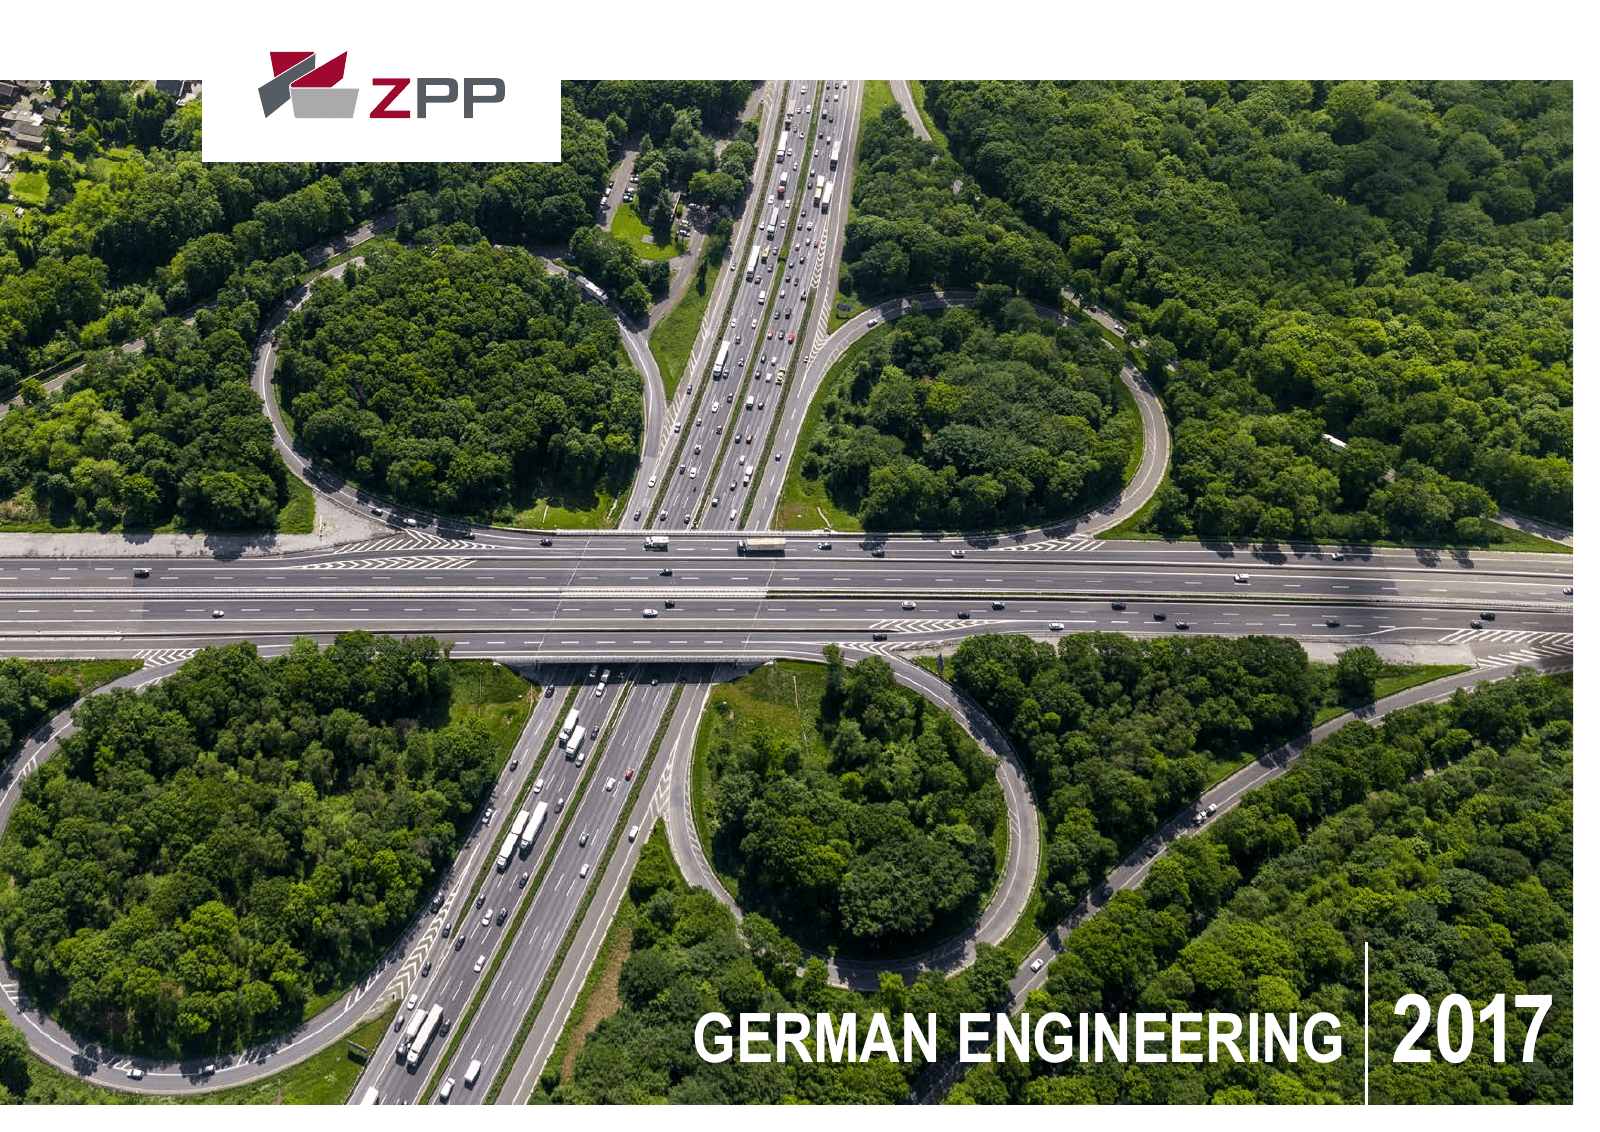 Vorschau ZPP GERMAN ENGINEERING 2017 Seite 1